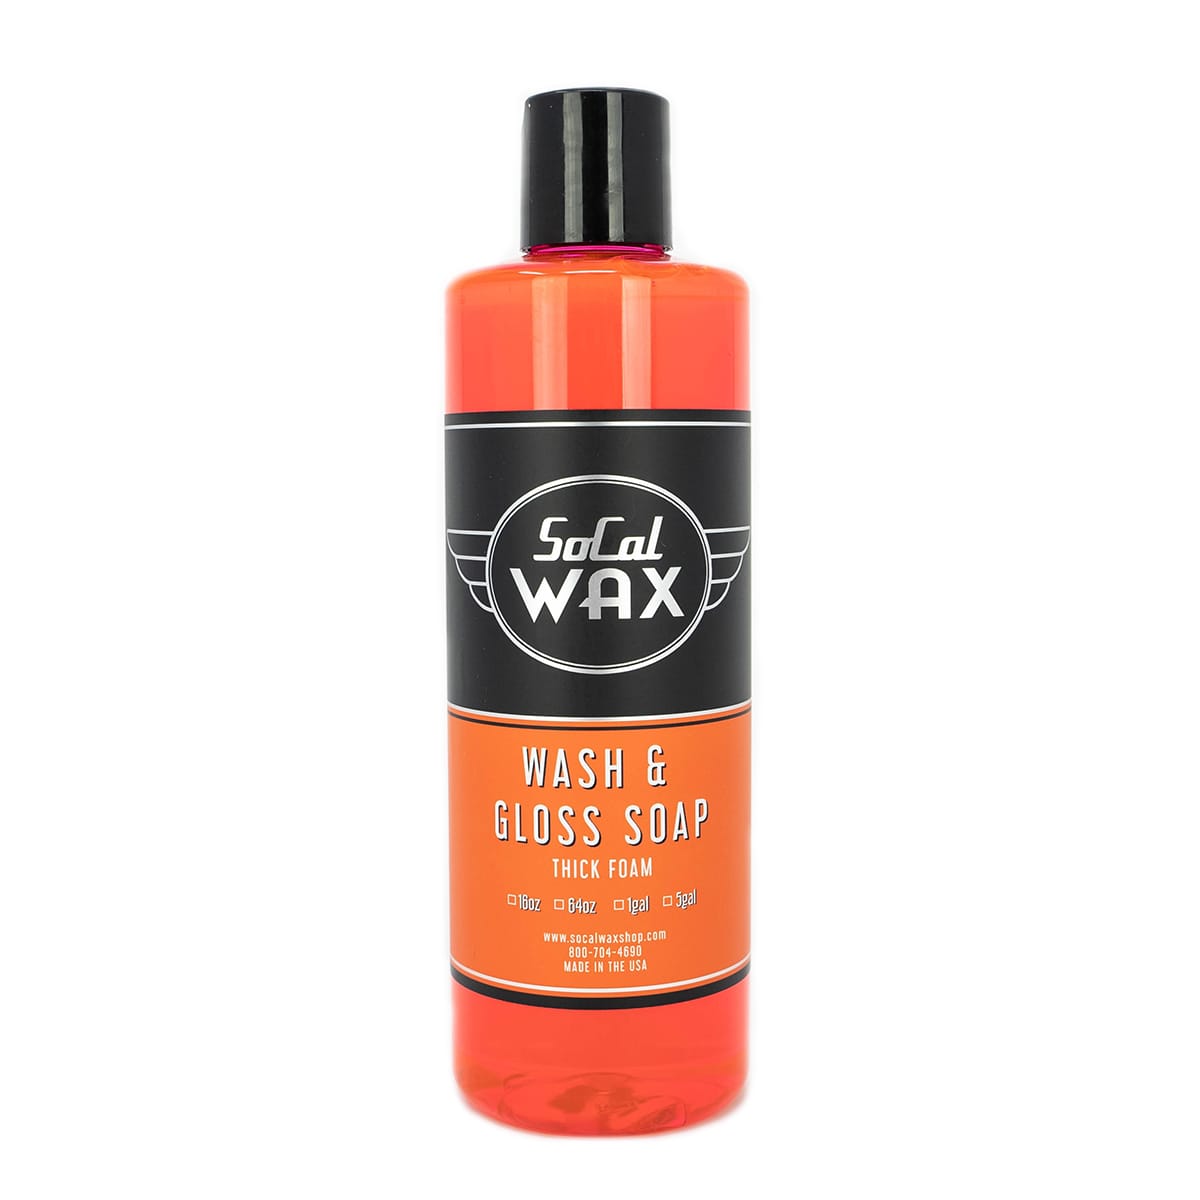 Jax Wax - Auto Detailing Supplies